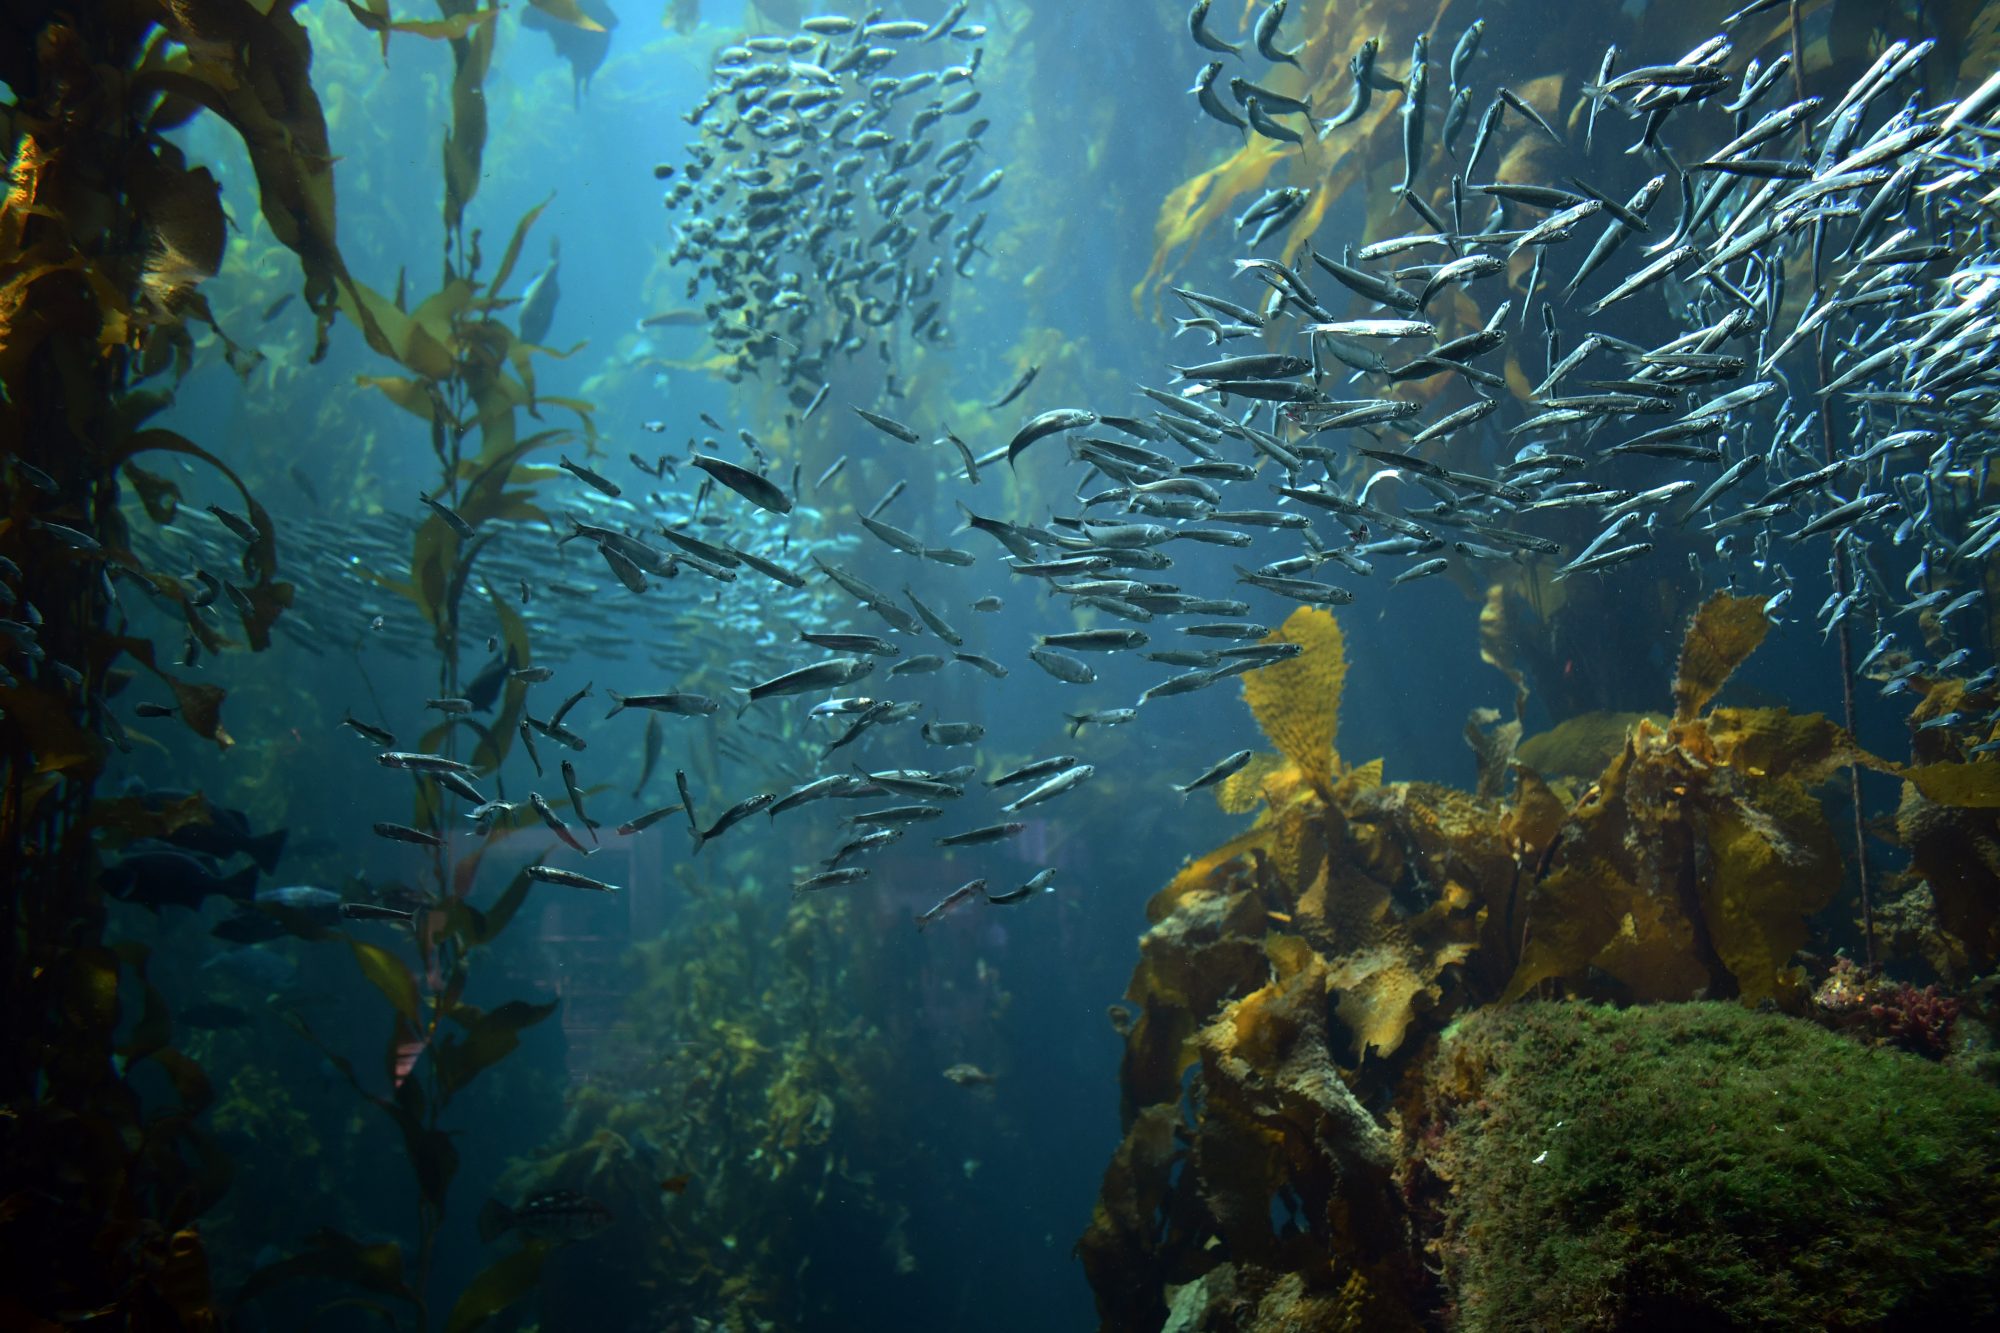 Underwater image of schools of fish, underwater plants, 